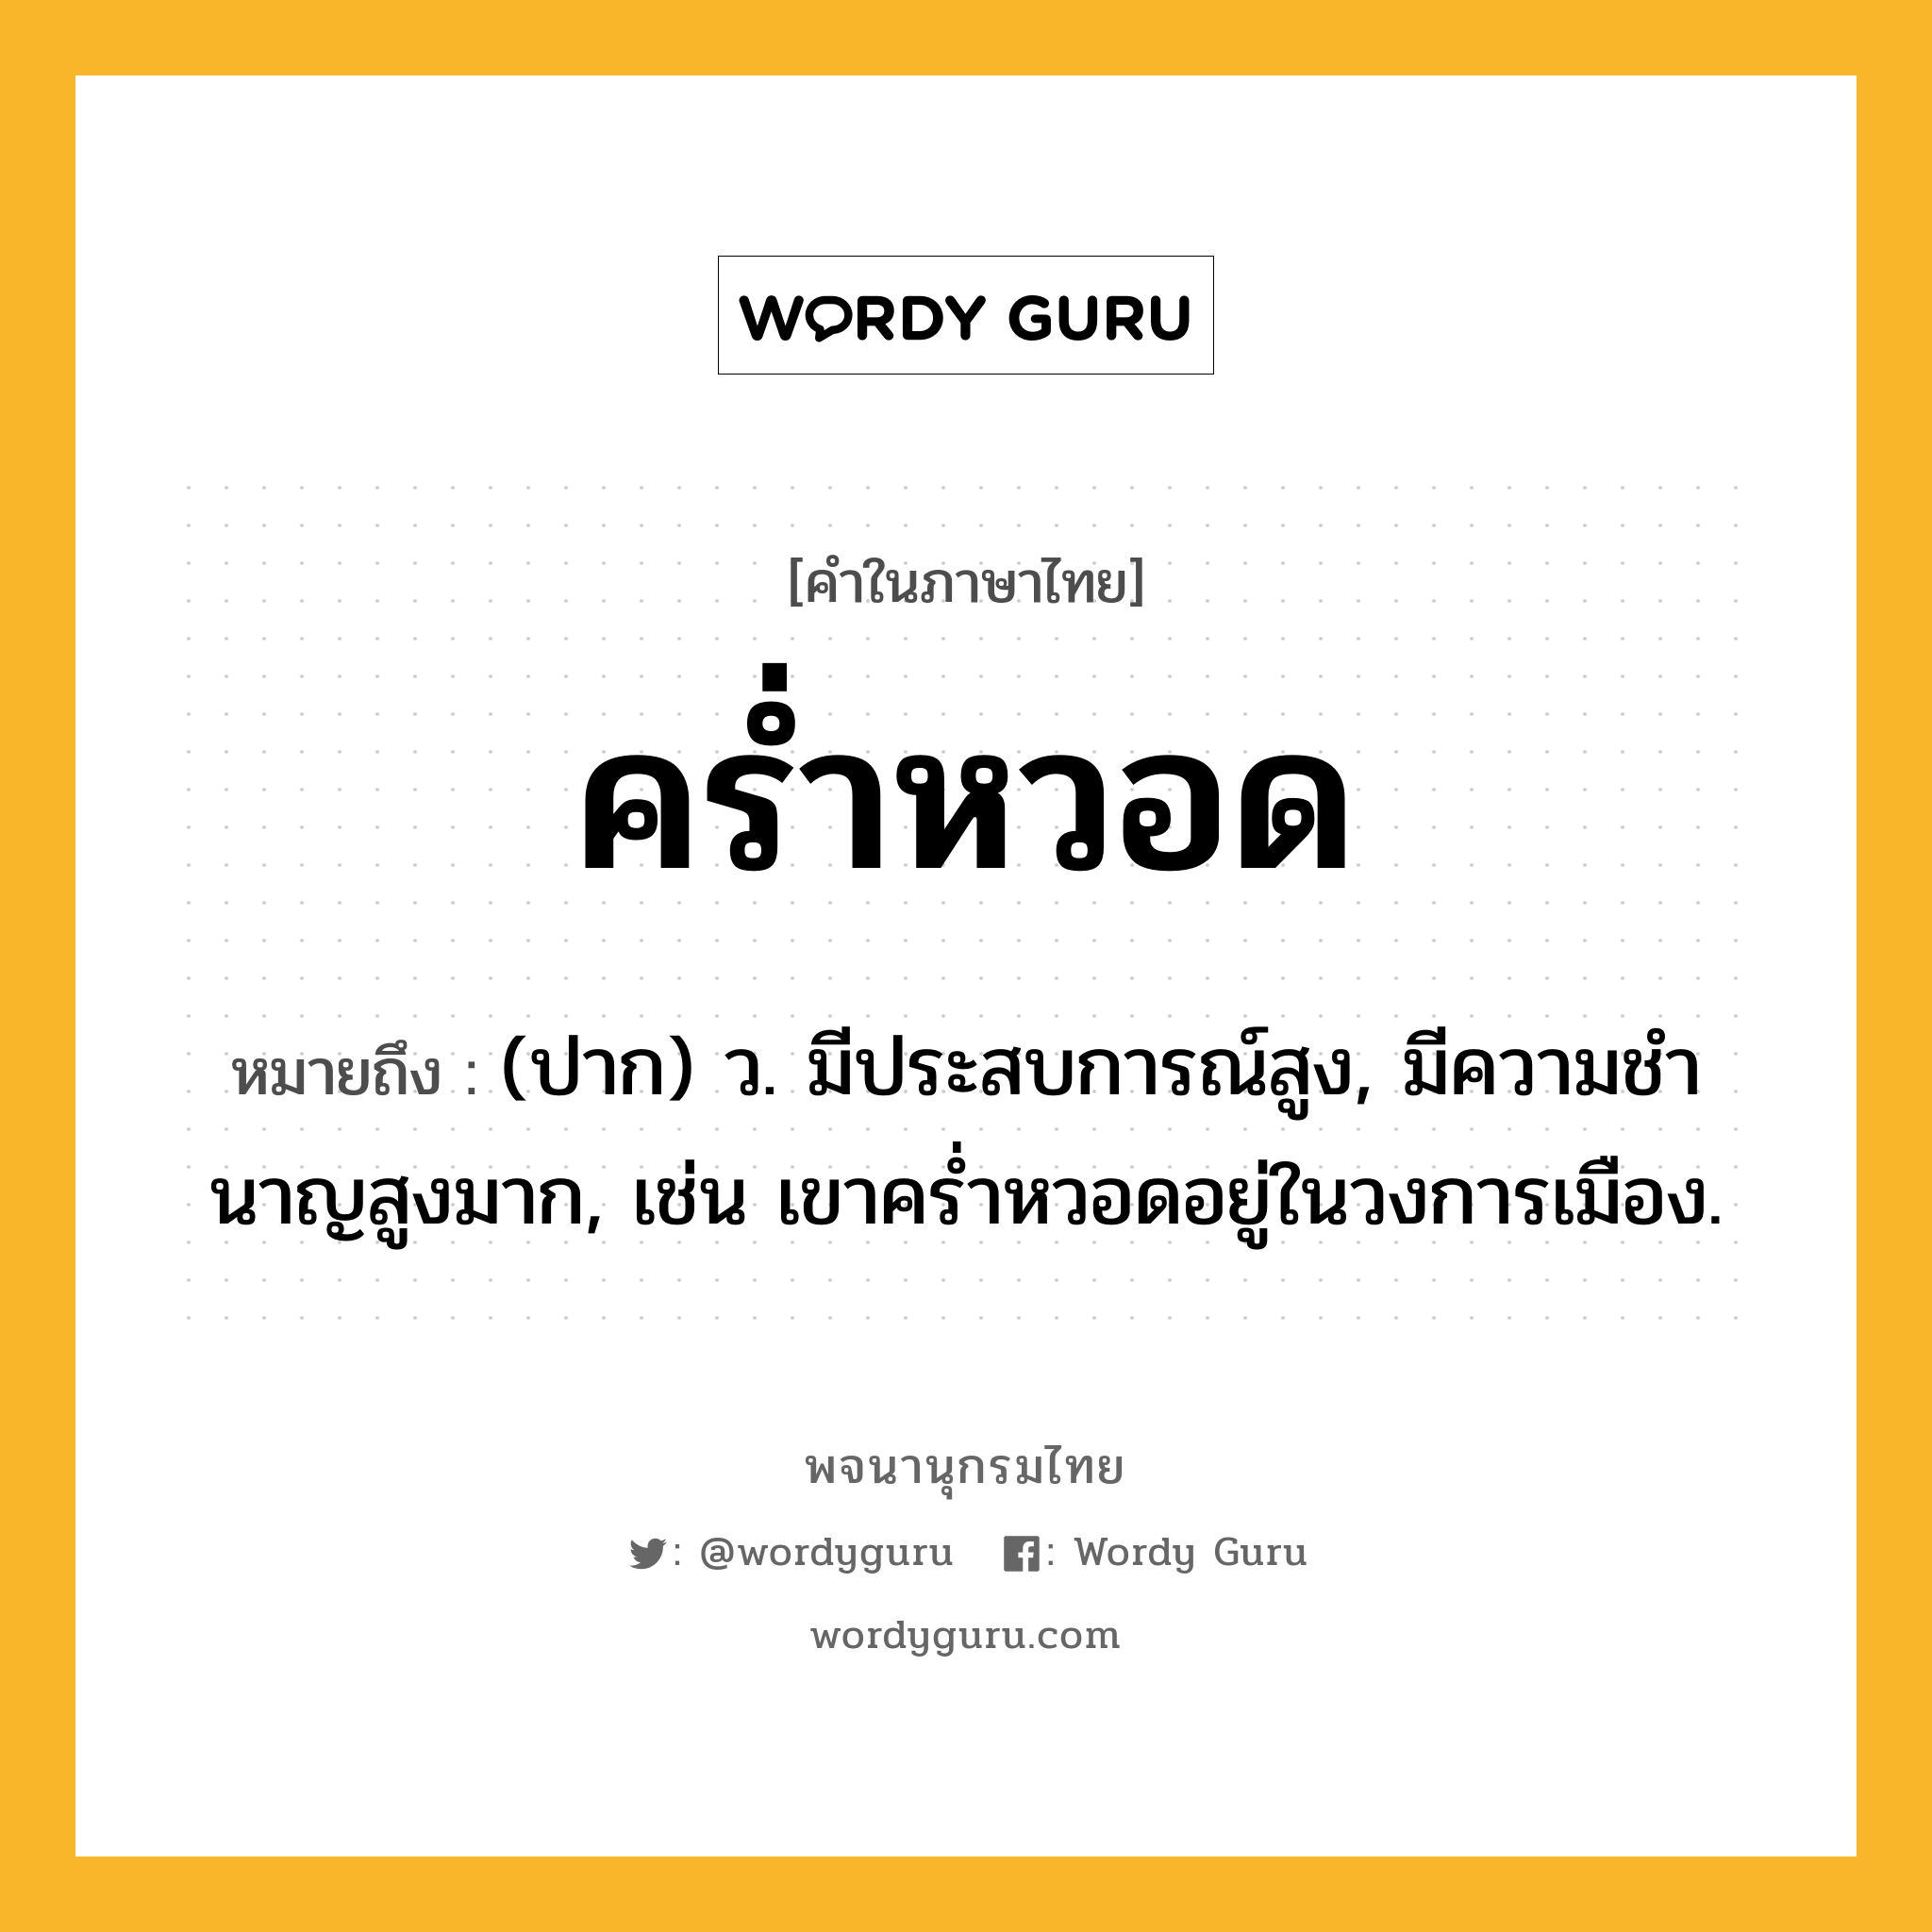 คร่ำหวอด หมายถึงอะไร?, คำในภาษาไทย คร่ำหวอด หมายถึง (ปาก) ว. มีประสบการณ์สูง, มีความชํานาญสูงมาก, เช่น เขาคร่ำหวอดอยู่ในวงการเมือง.